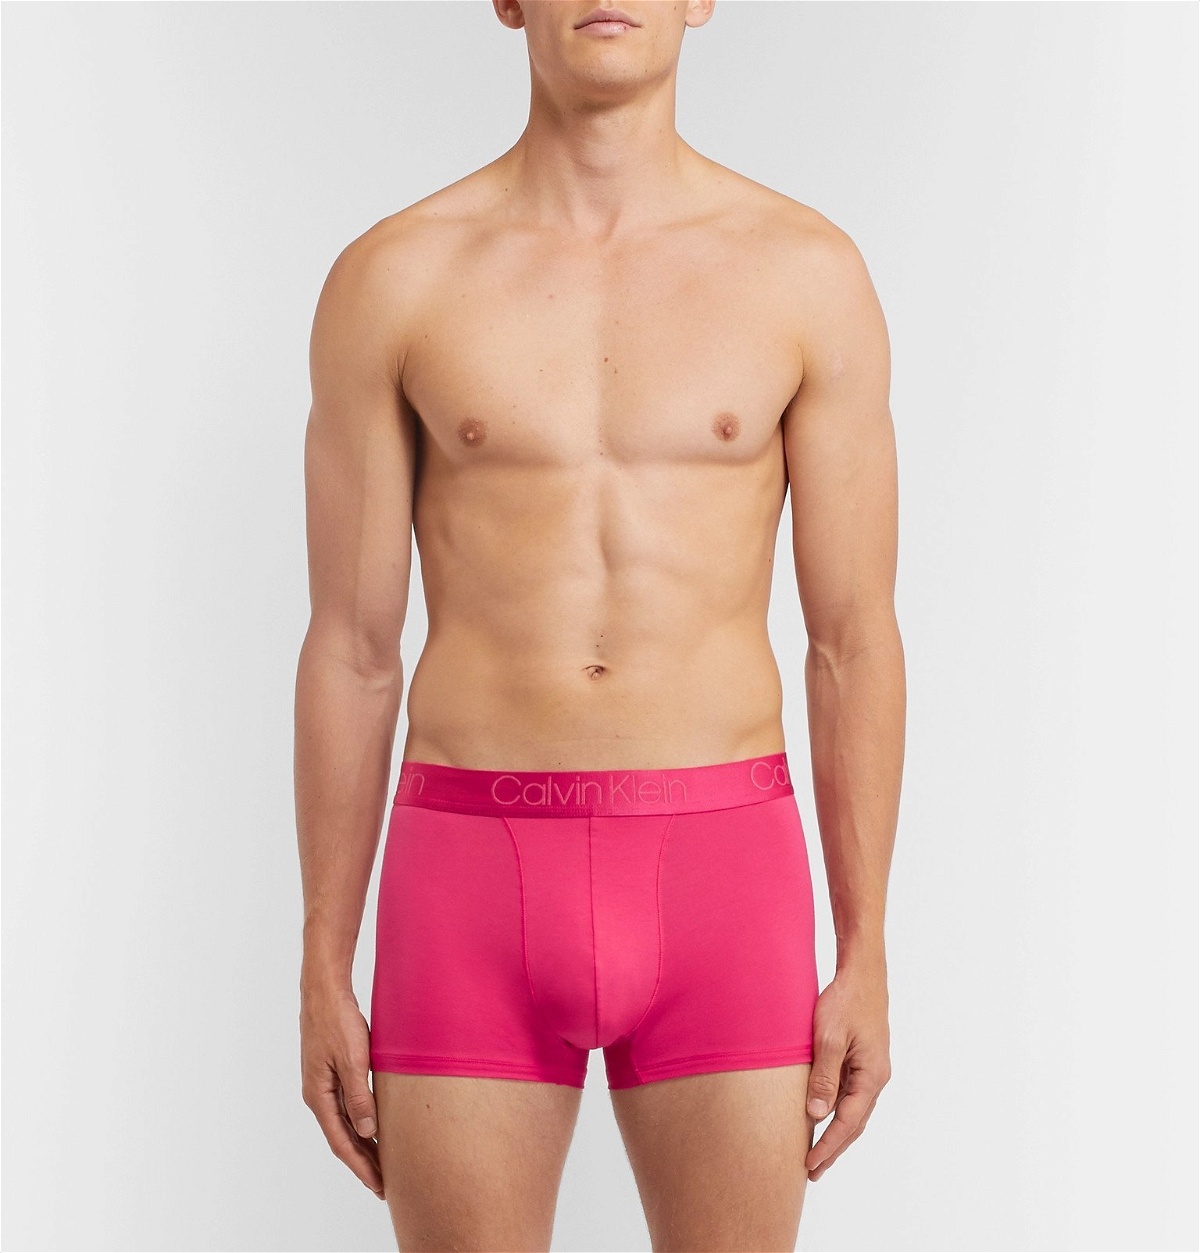 Calvin Klein Underwear - Stretch-Modal and Cotton-Blend Boxer Briefs - Pink  Calvin Klein Underwear